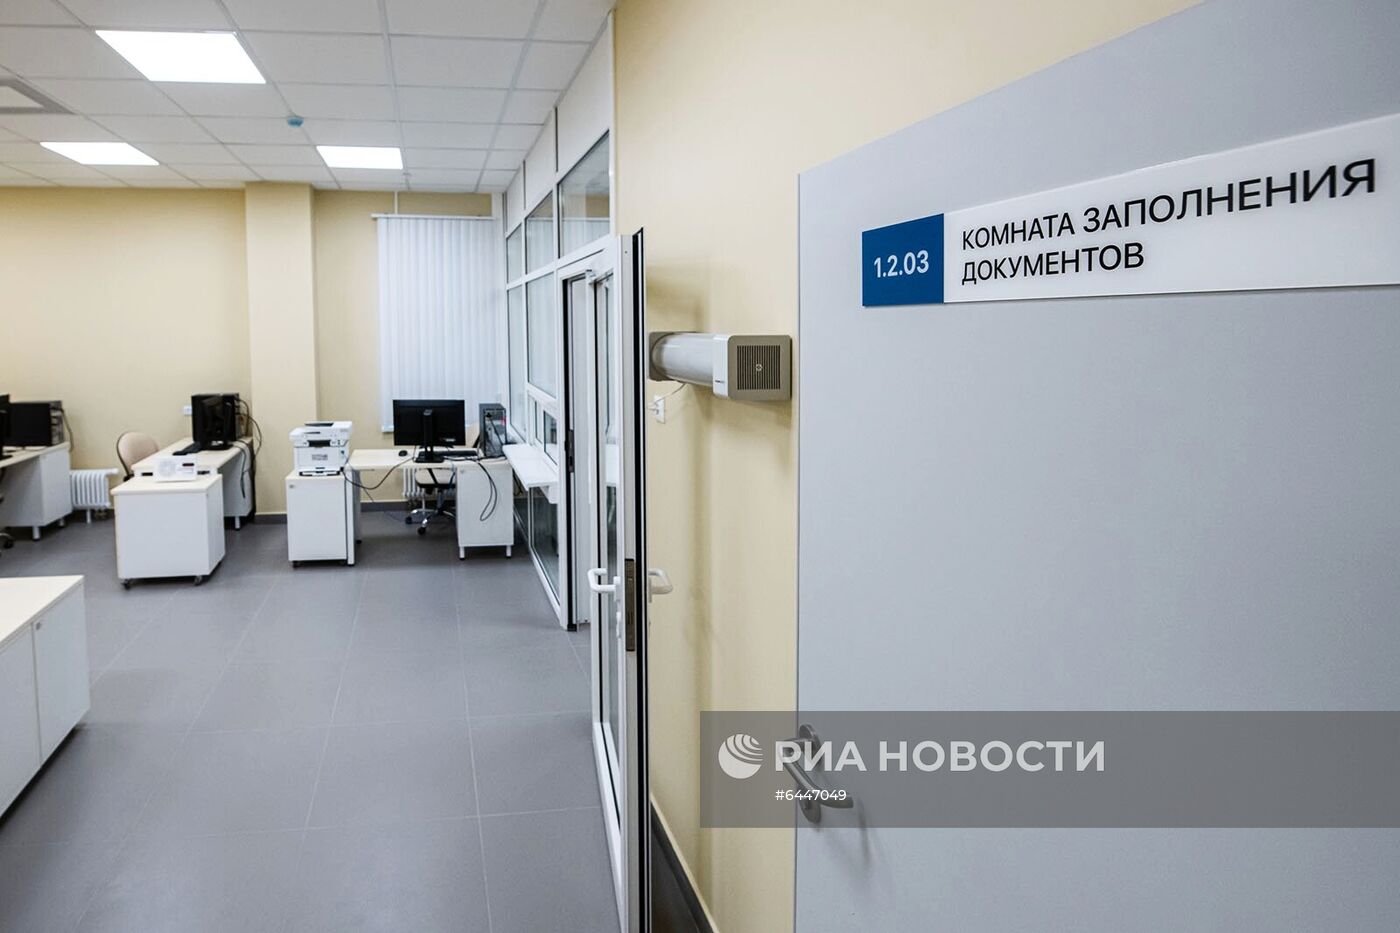 Мэр Москвы С. Собянин осмотрел новую подстанцию скорой помощи в Коммунарке